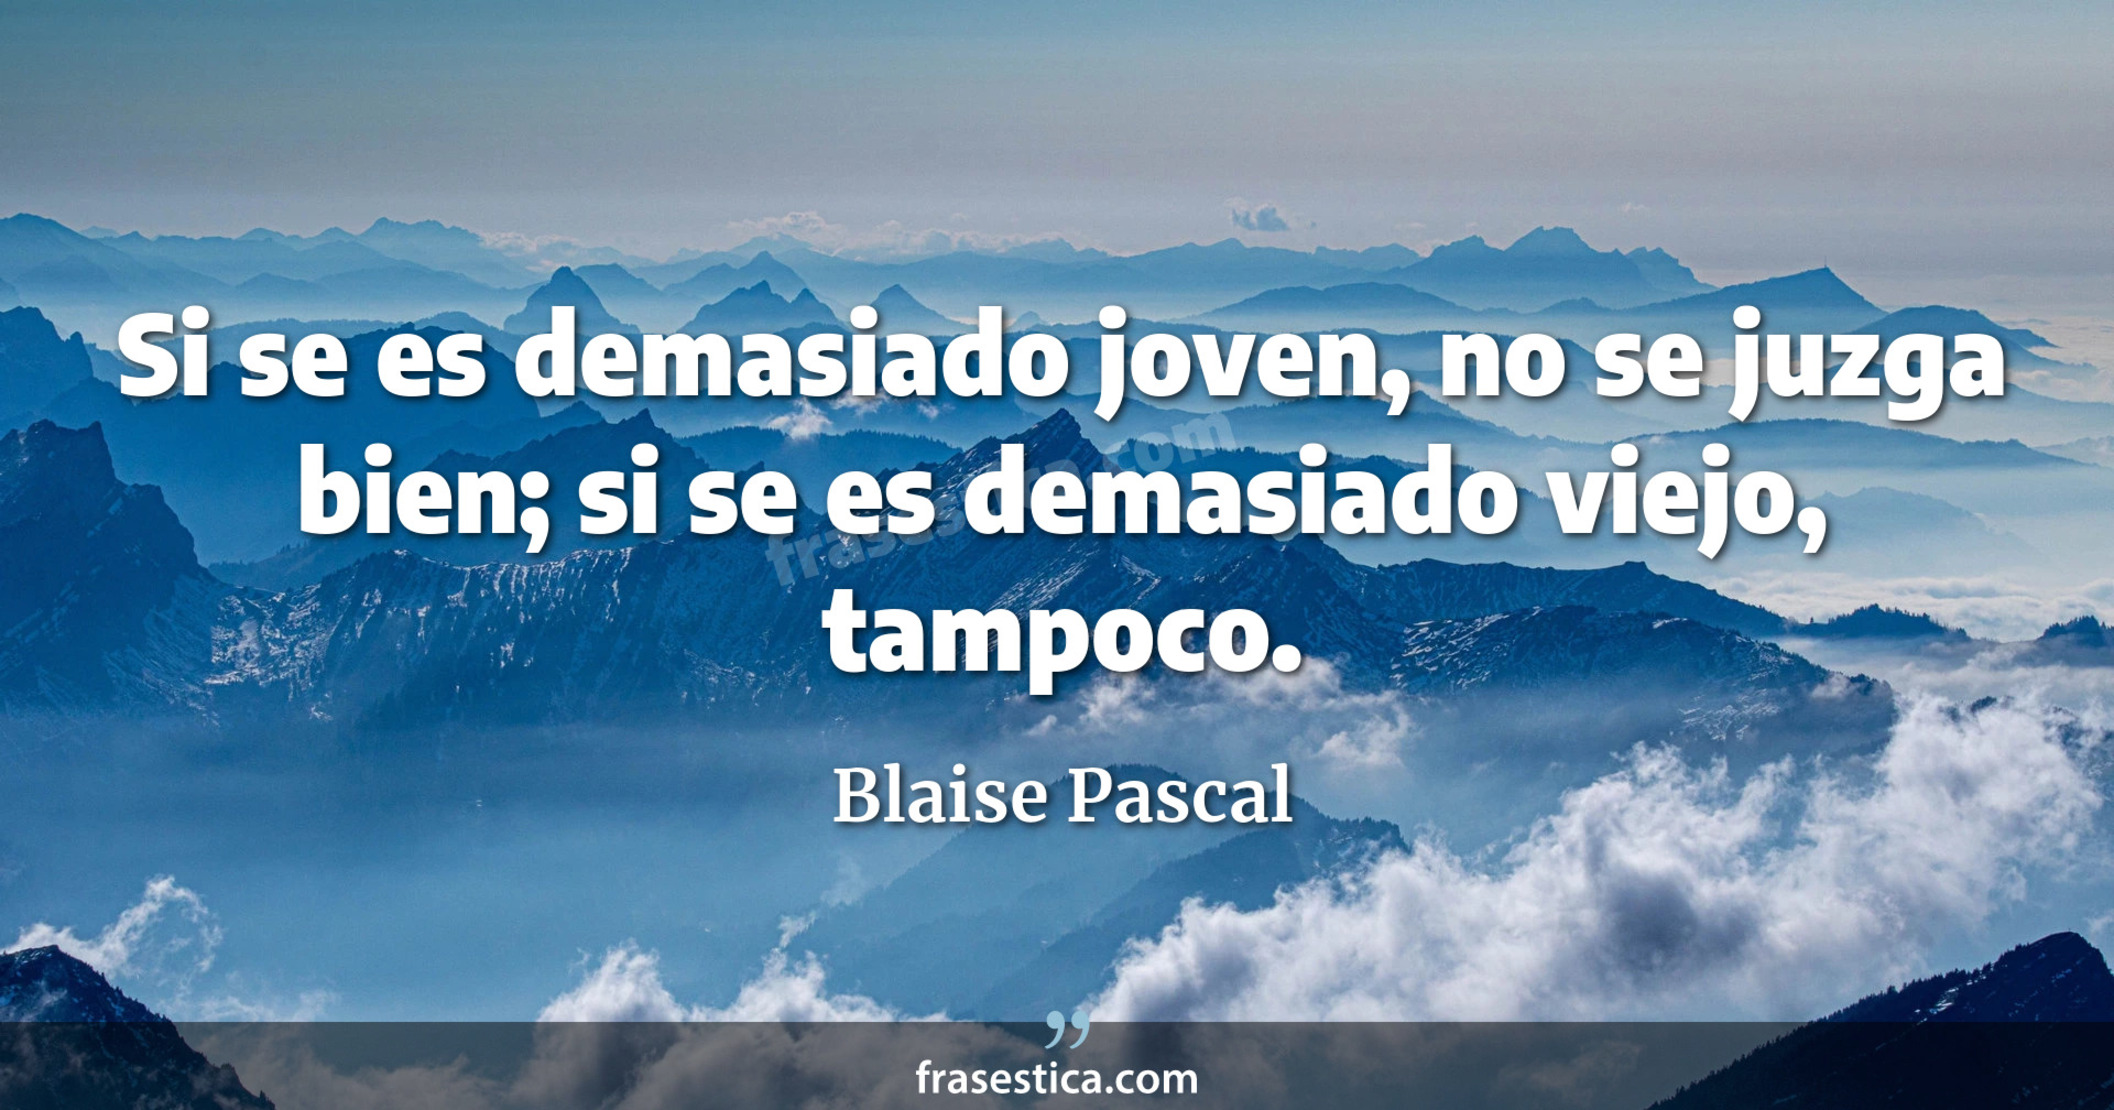 Si se es demasiado joven, no se juzga bien; si se es demasiado viejo, tampoco. - Blaise Pascal